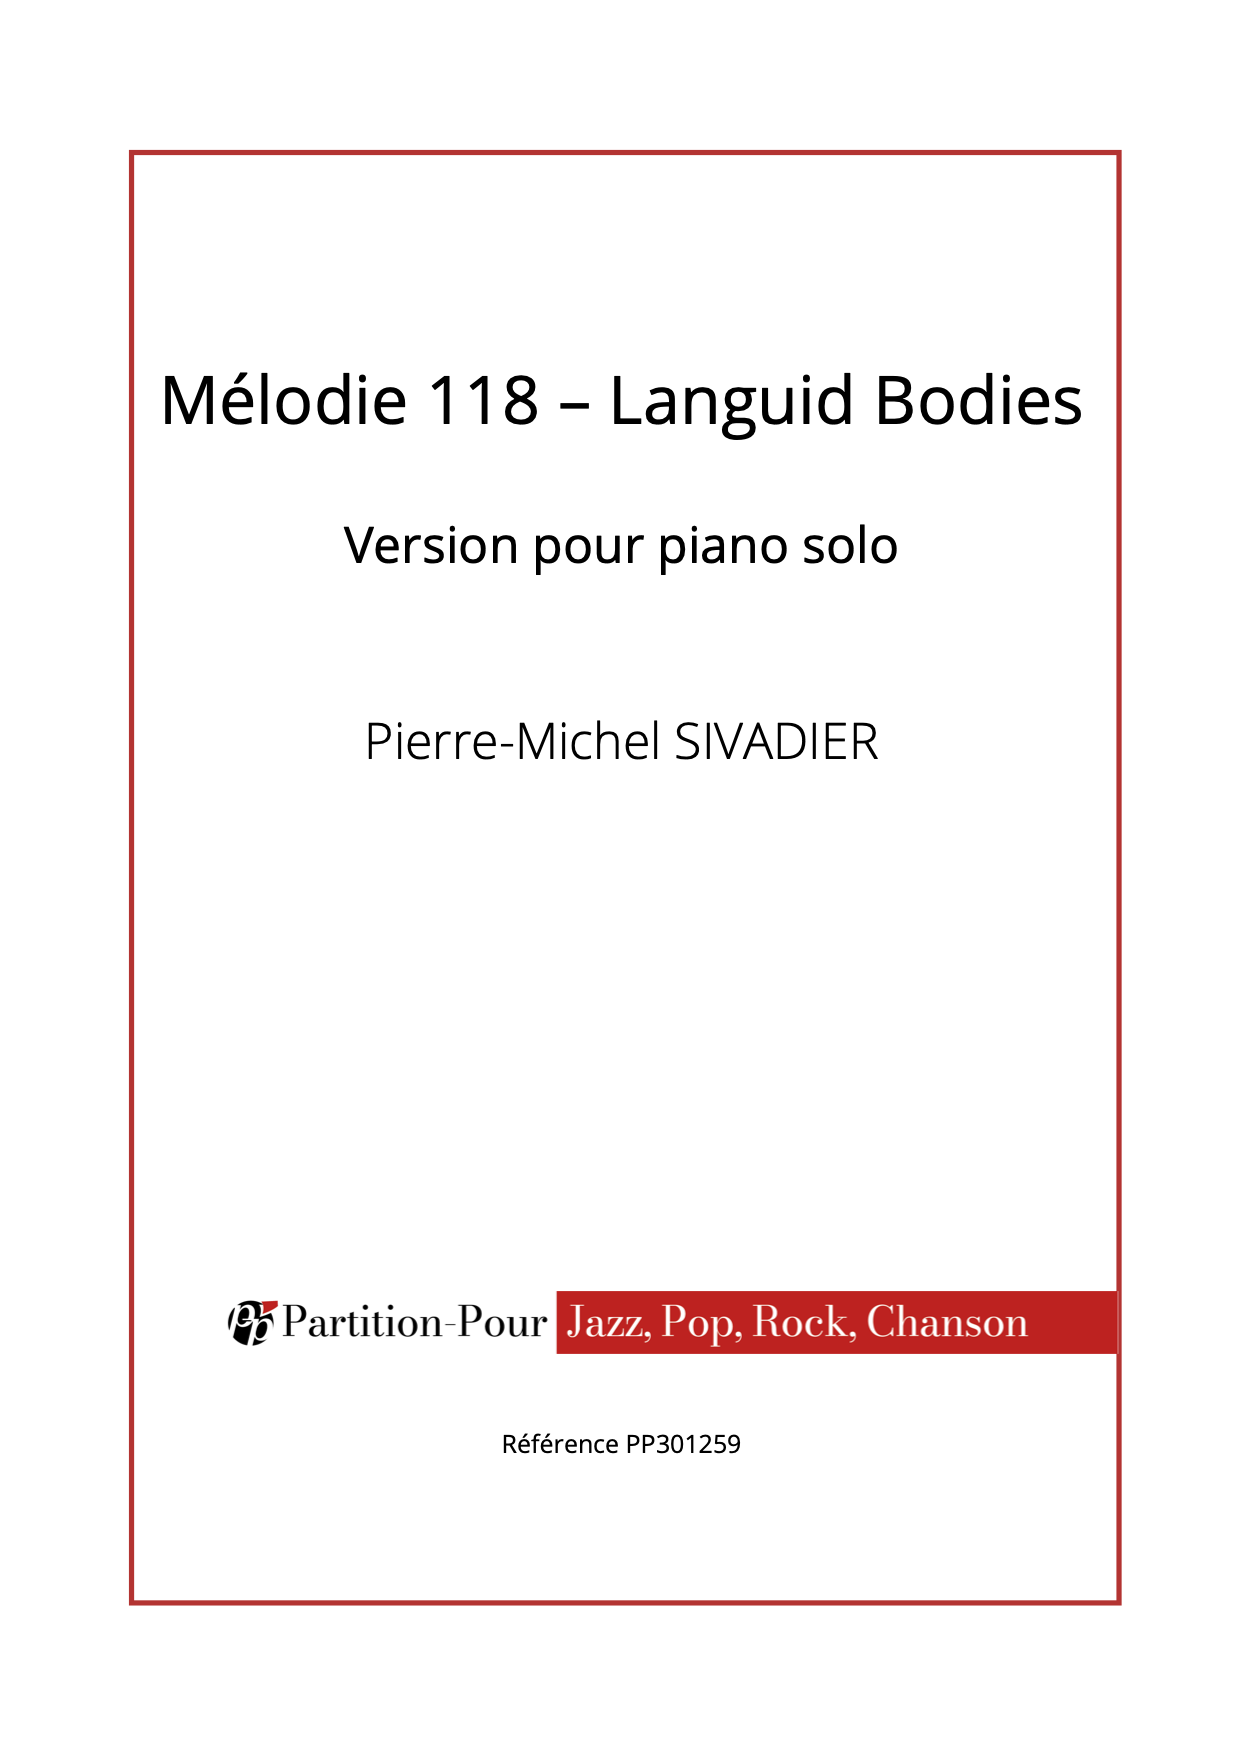 PP301259 - Sivadier PM - Mélodie 118 - Languid Bodies - piano solo -présentation